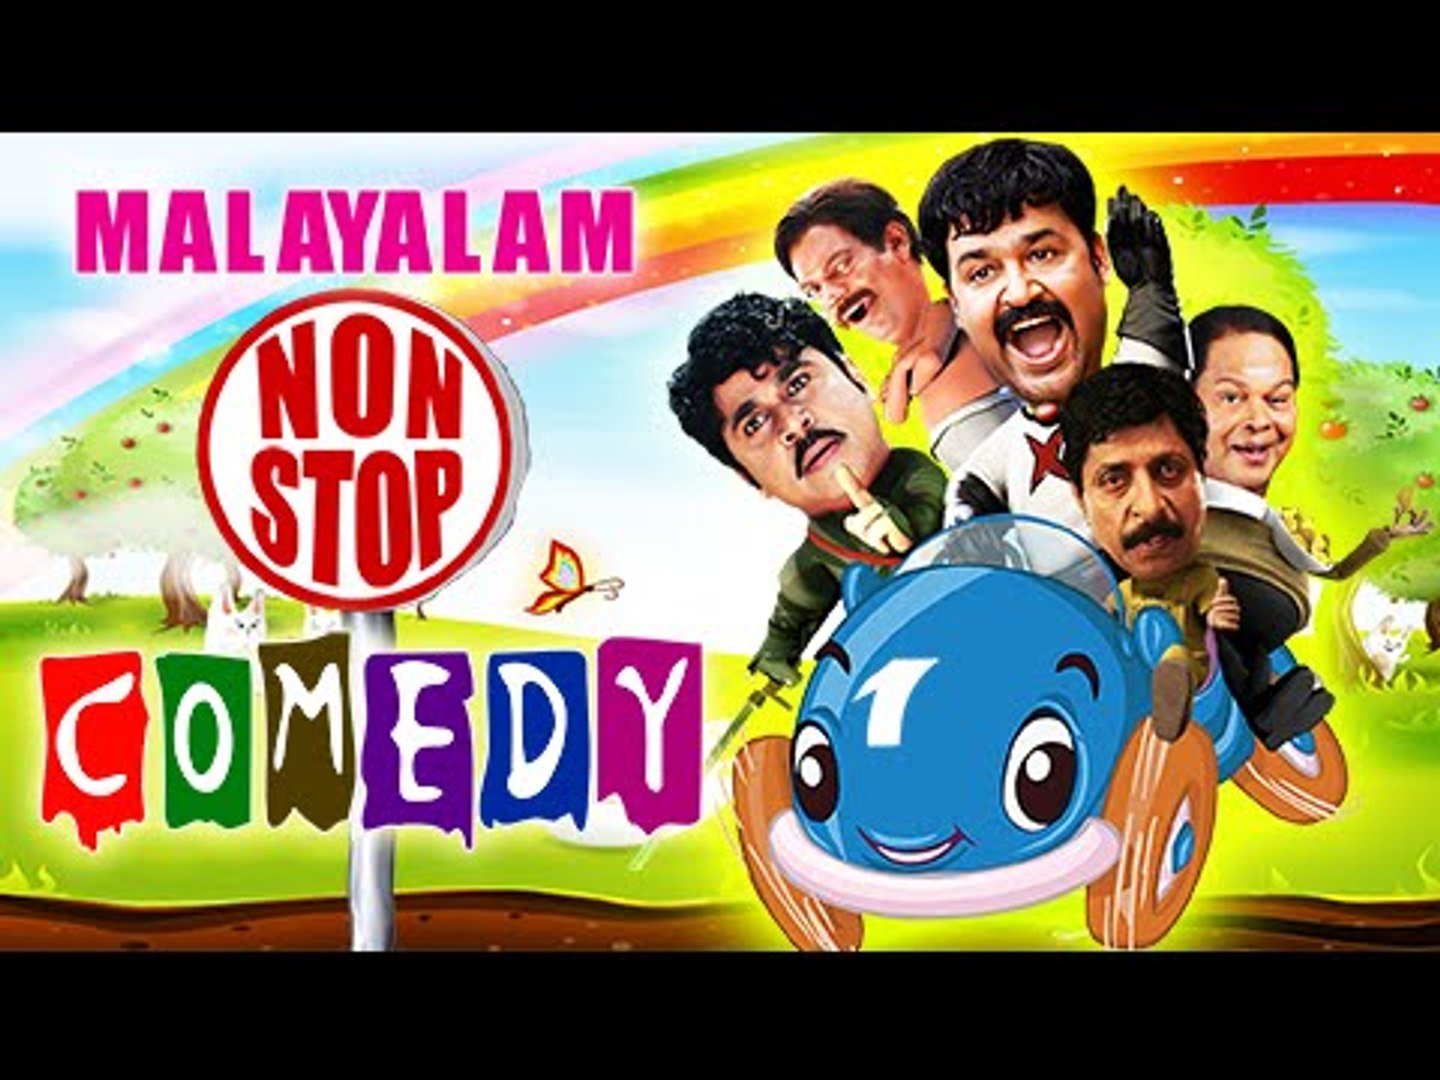 Malayalam Comedy | Malayalam Comedy Movies | Malayalam Non Stop Comedy Volume - 1